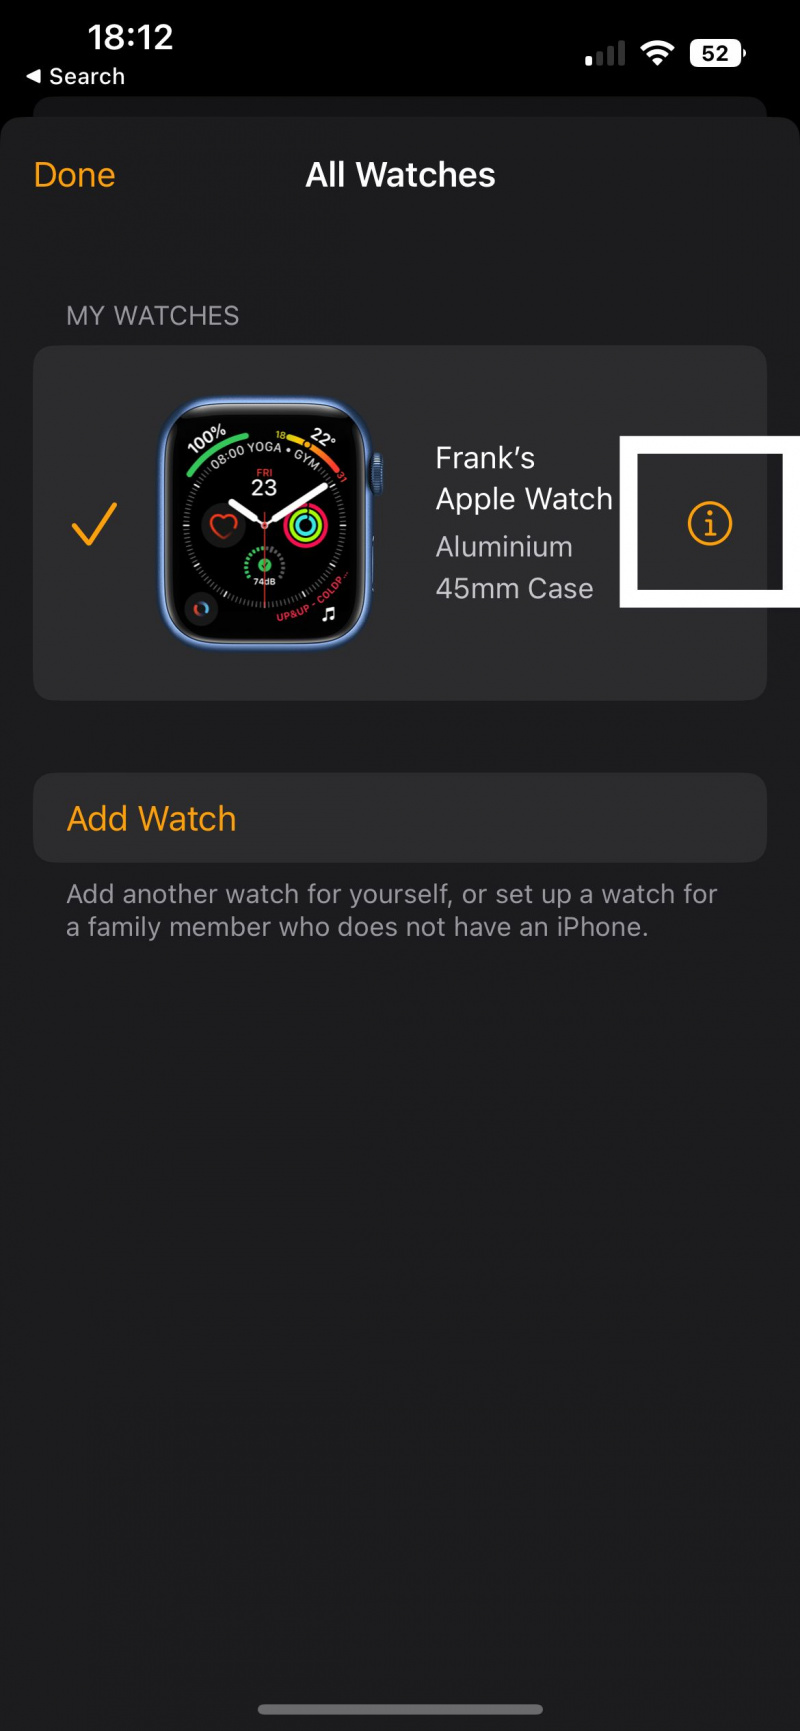   لقطة شاشة لتطبيق Watch توضح مكان النقر للوصول إلى معلومات Apple Watch الخاصة بك.